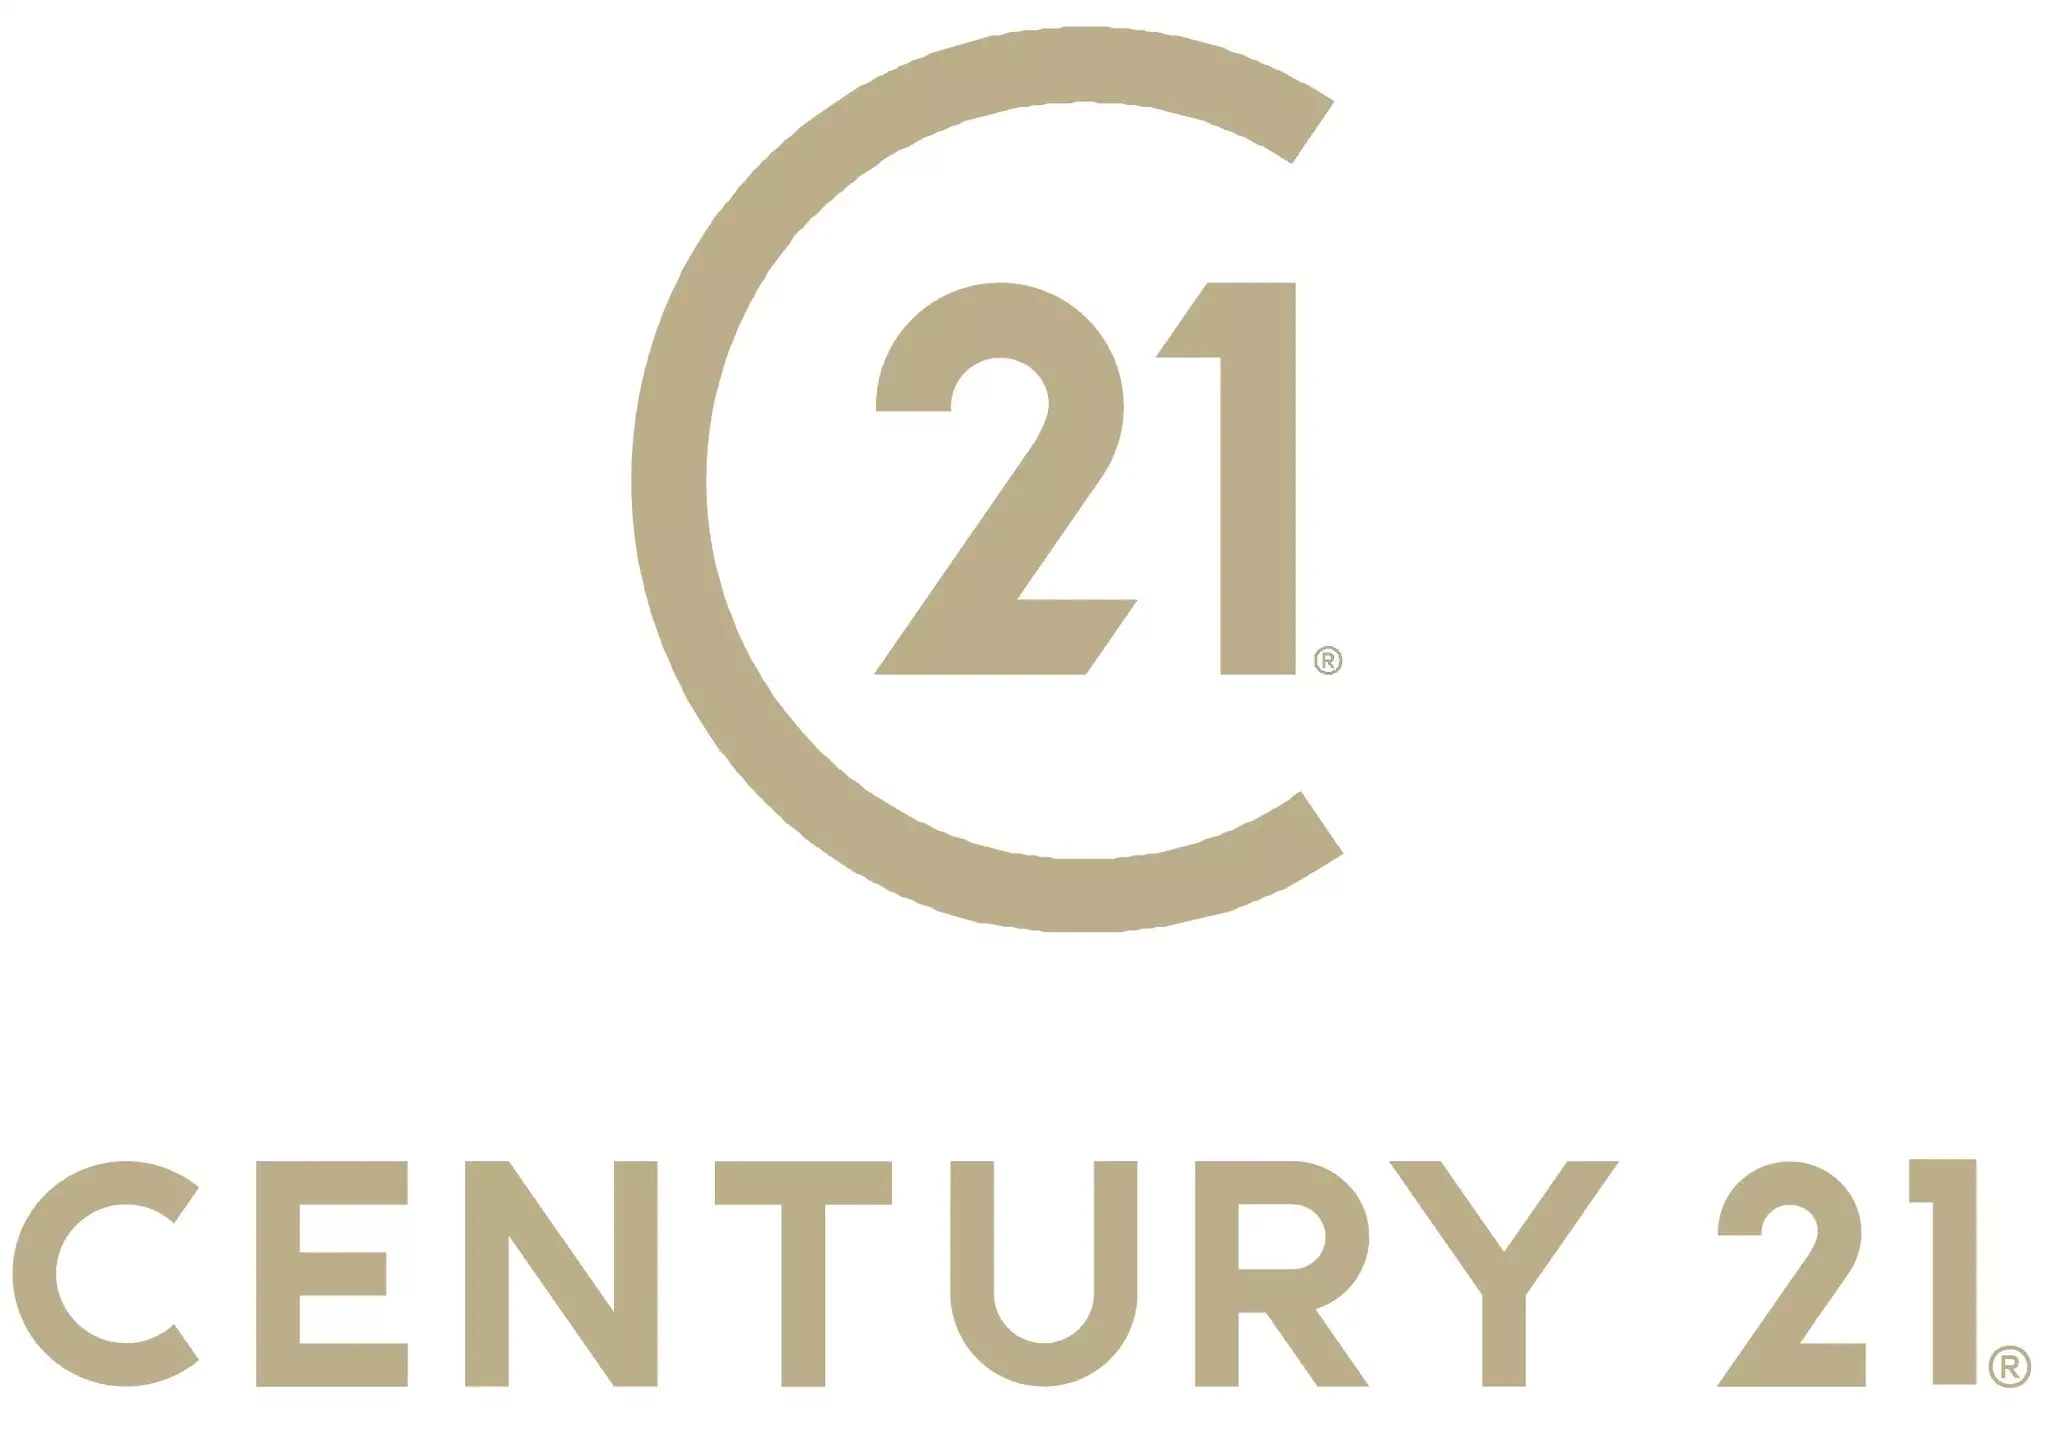 Logo de l'agence immobilière Century 21.